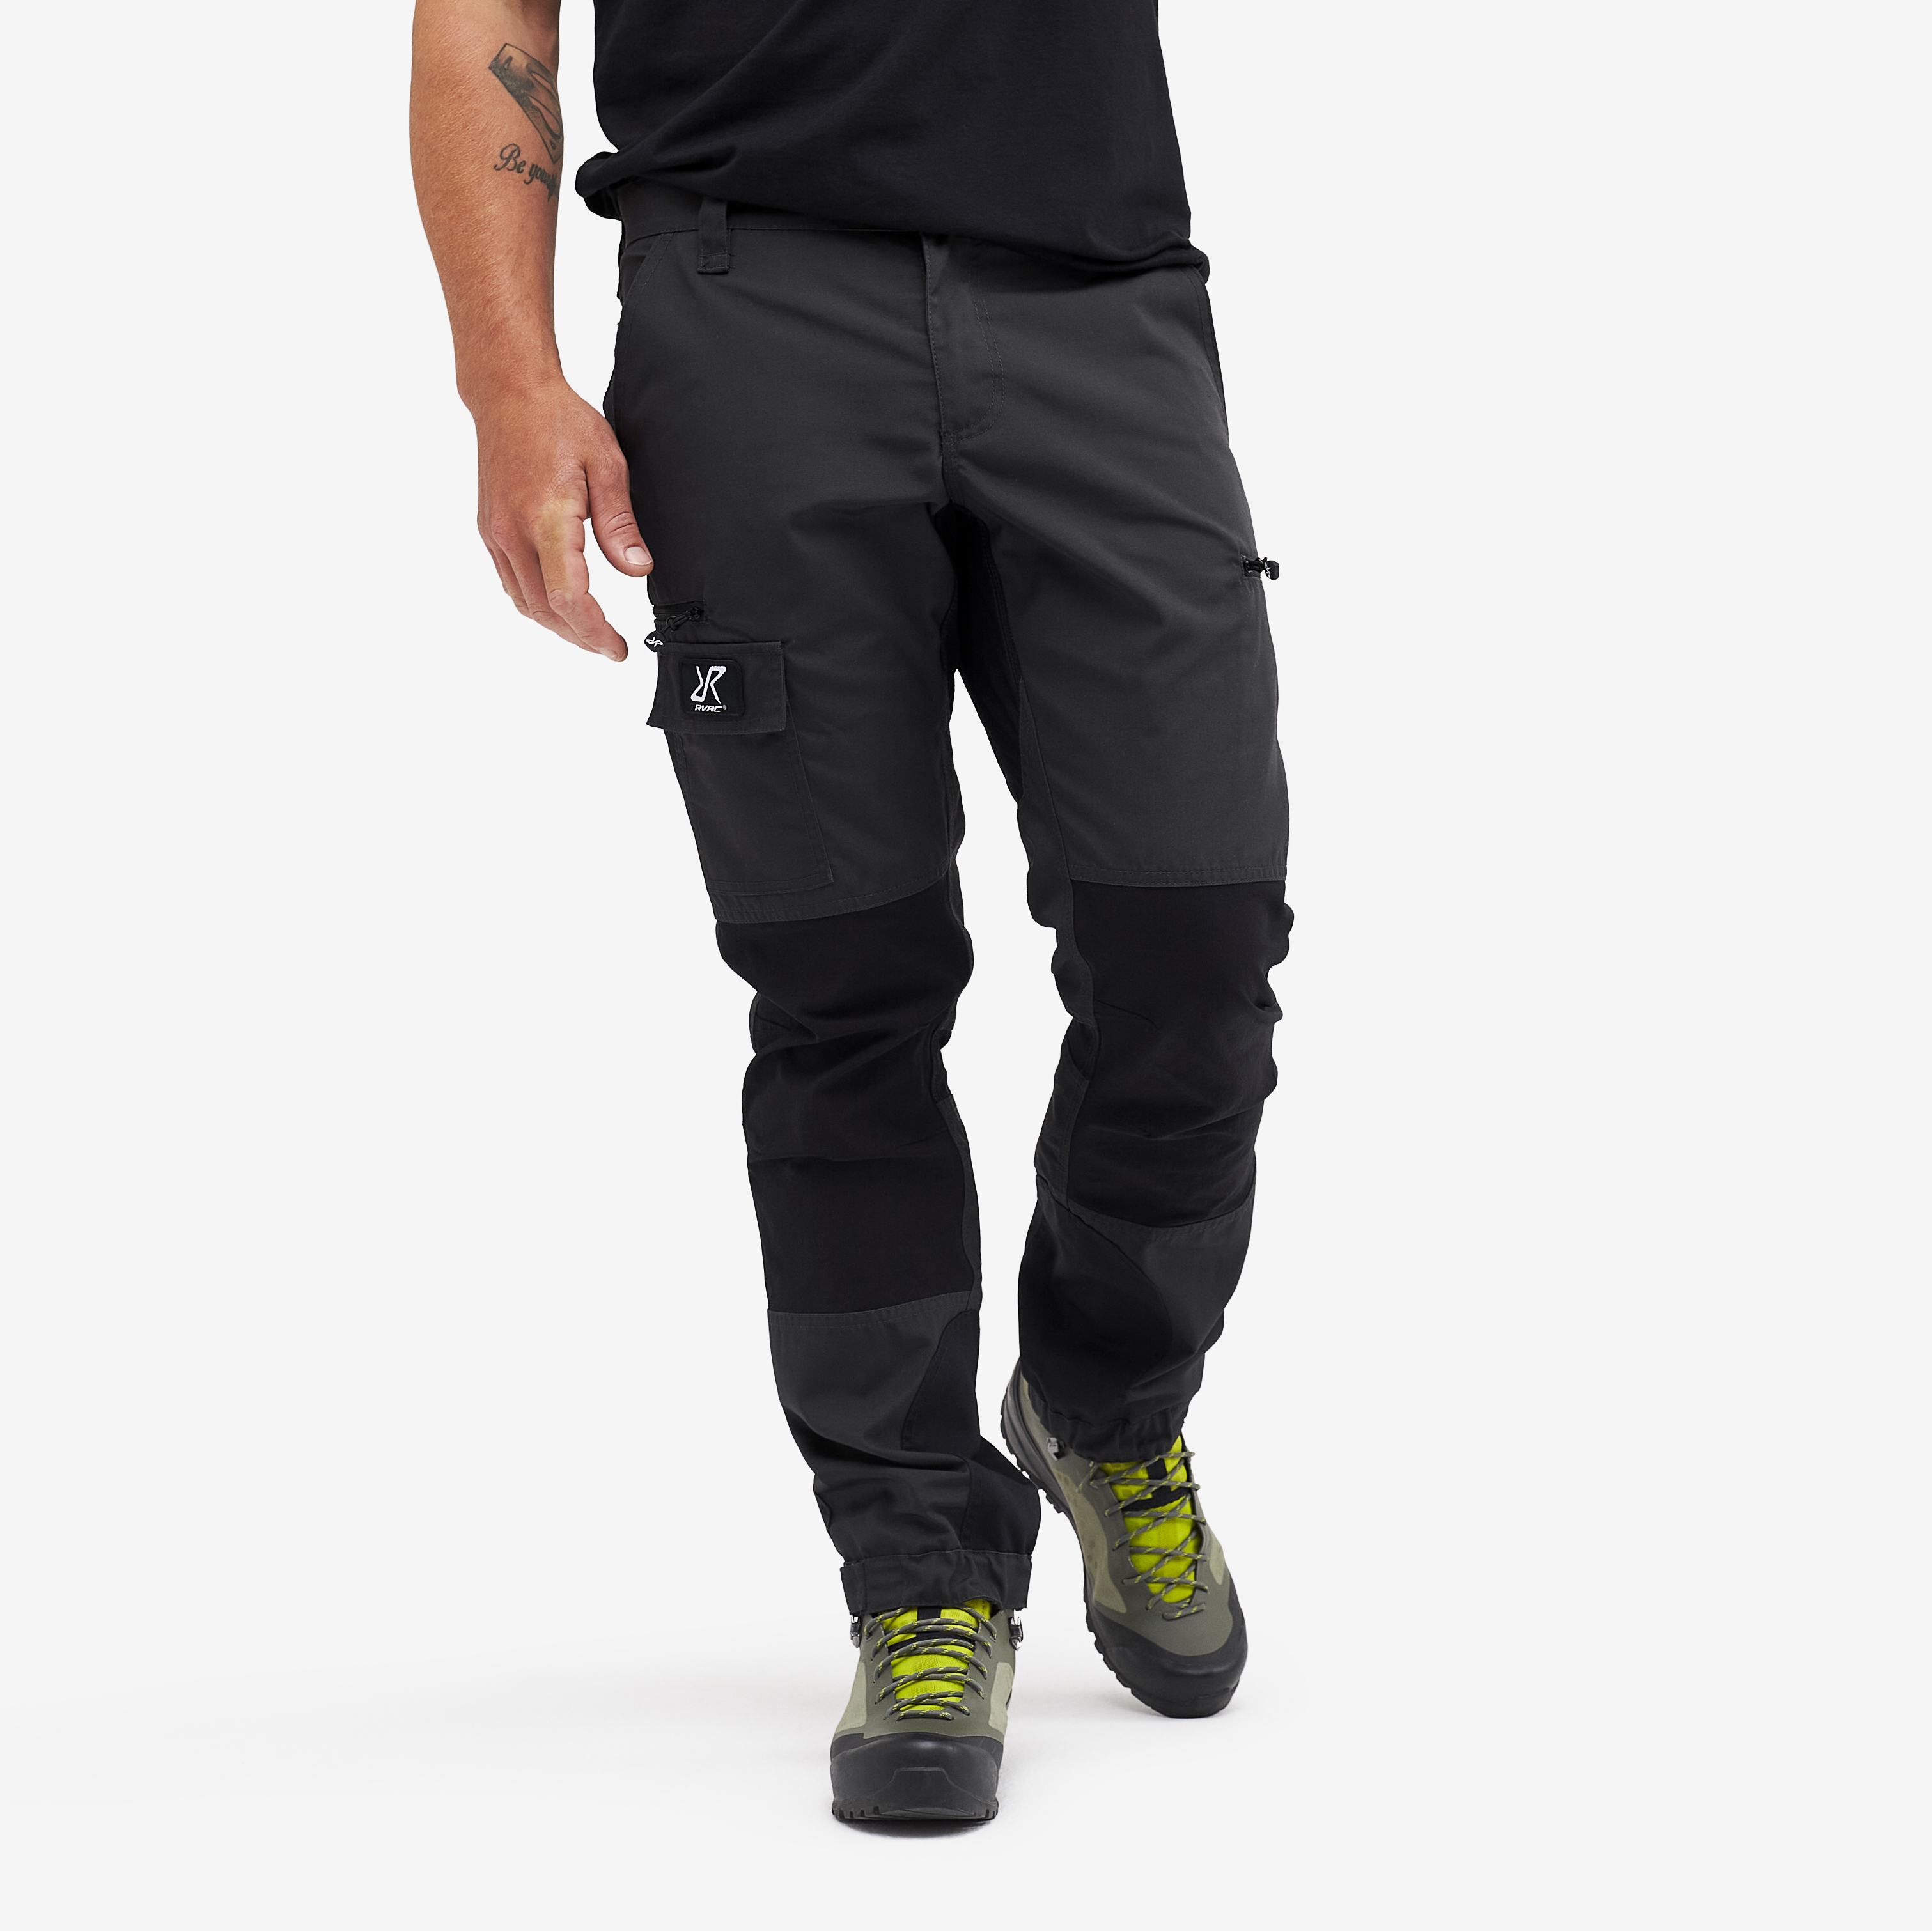 Nordwand Short outdoor pants for men in dark grey